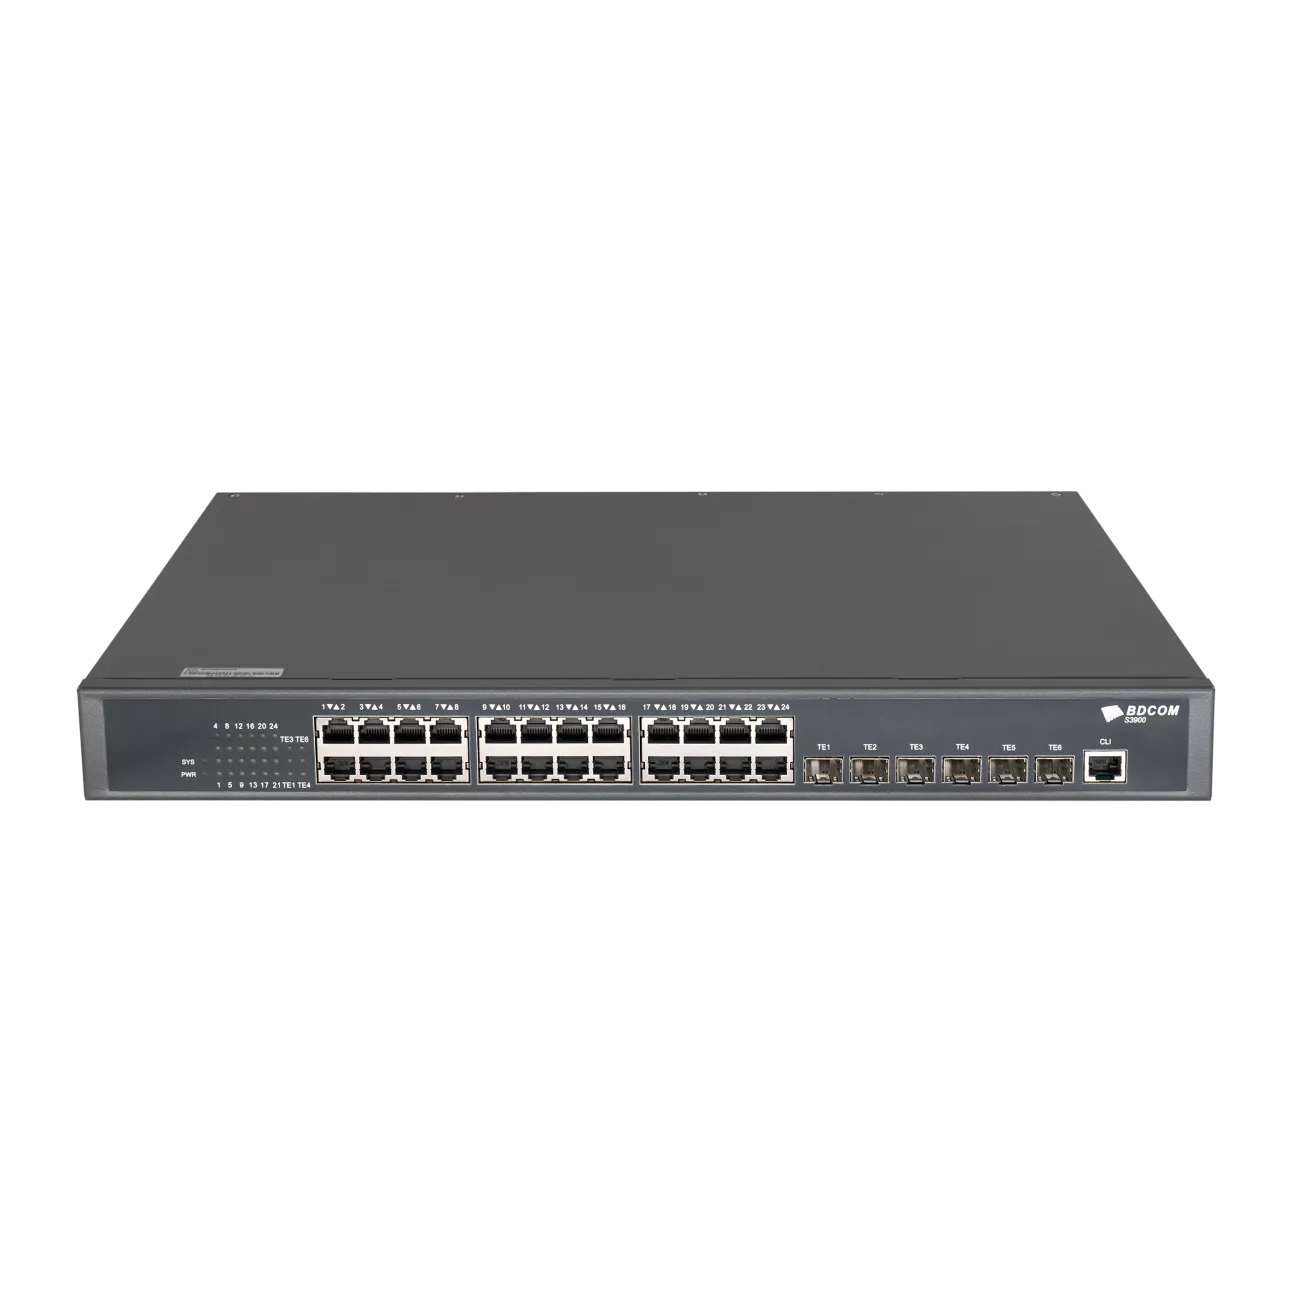 Коммутатор BDCom S3900-24T6X, управляемый, кол-во портов: 24x1 Гбит/с, кол-во SFP/uplink: SFP+ 6x10 Гбит/с, установка в стойку (S3900-24T6X)